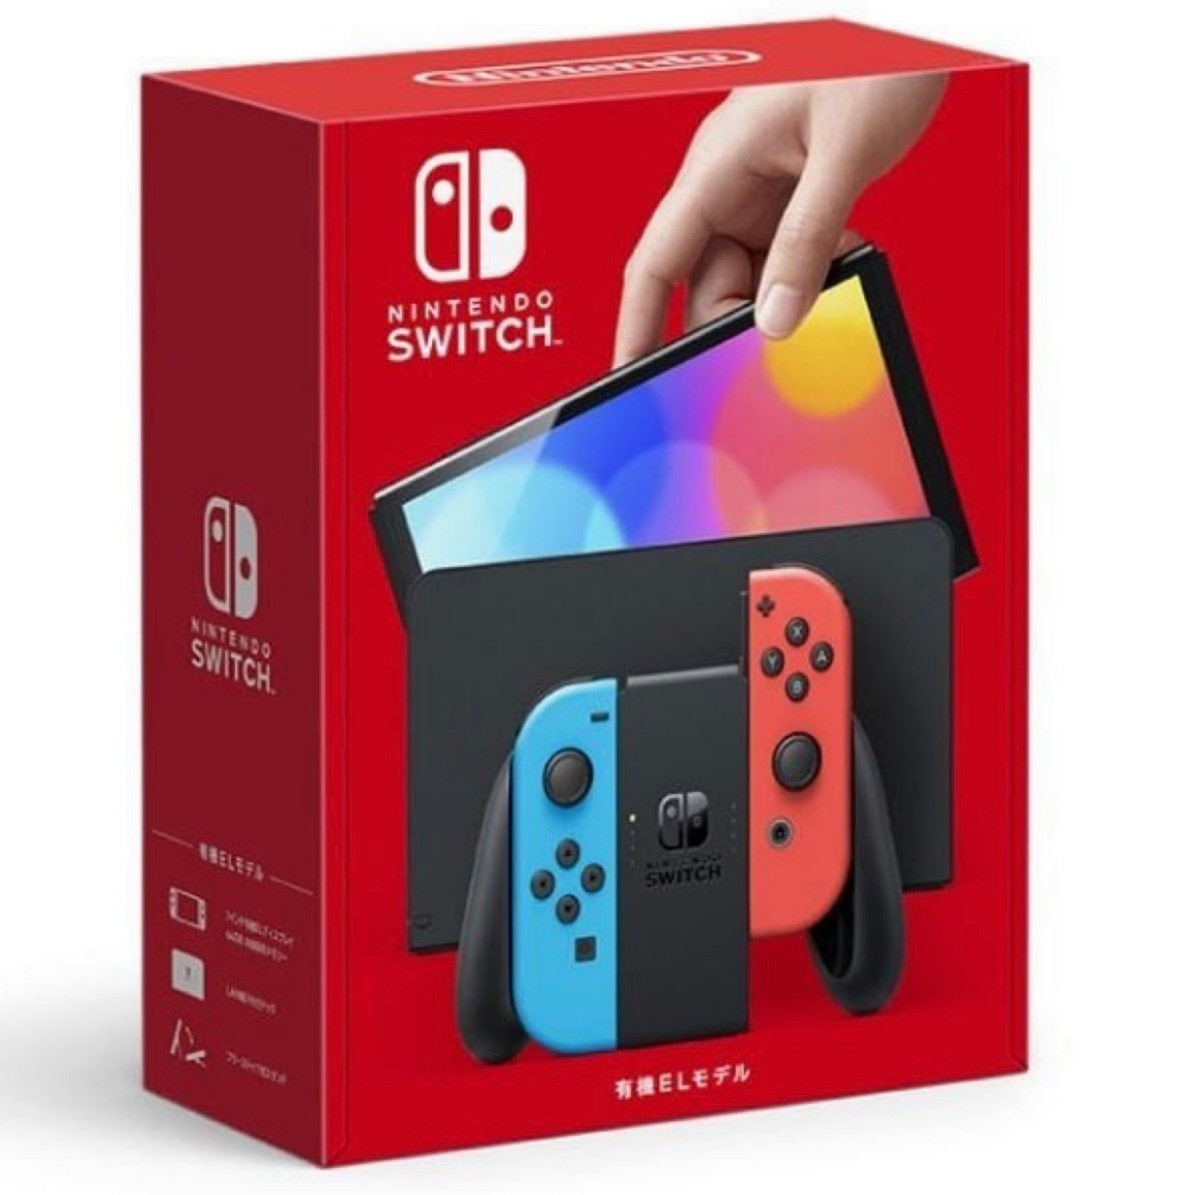 Nintendo Switch（有機ELモデル） Joy-Con(L) ネオンブルー/(R) ネオン